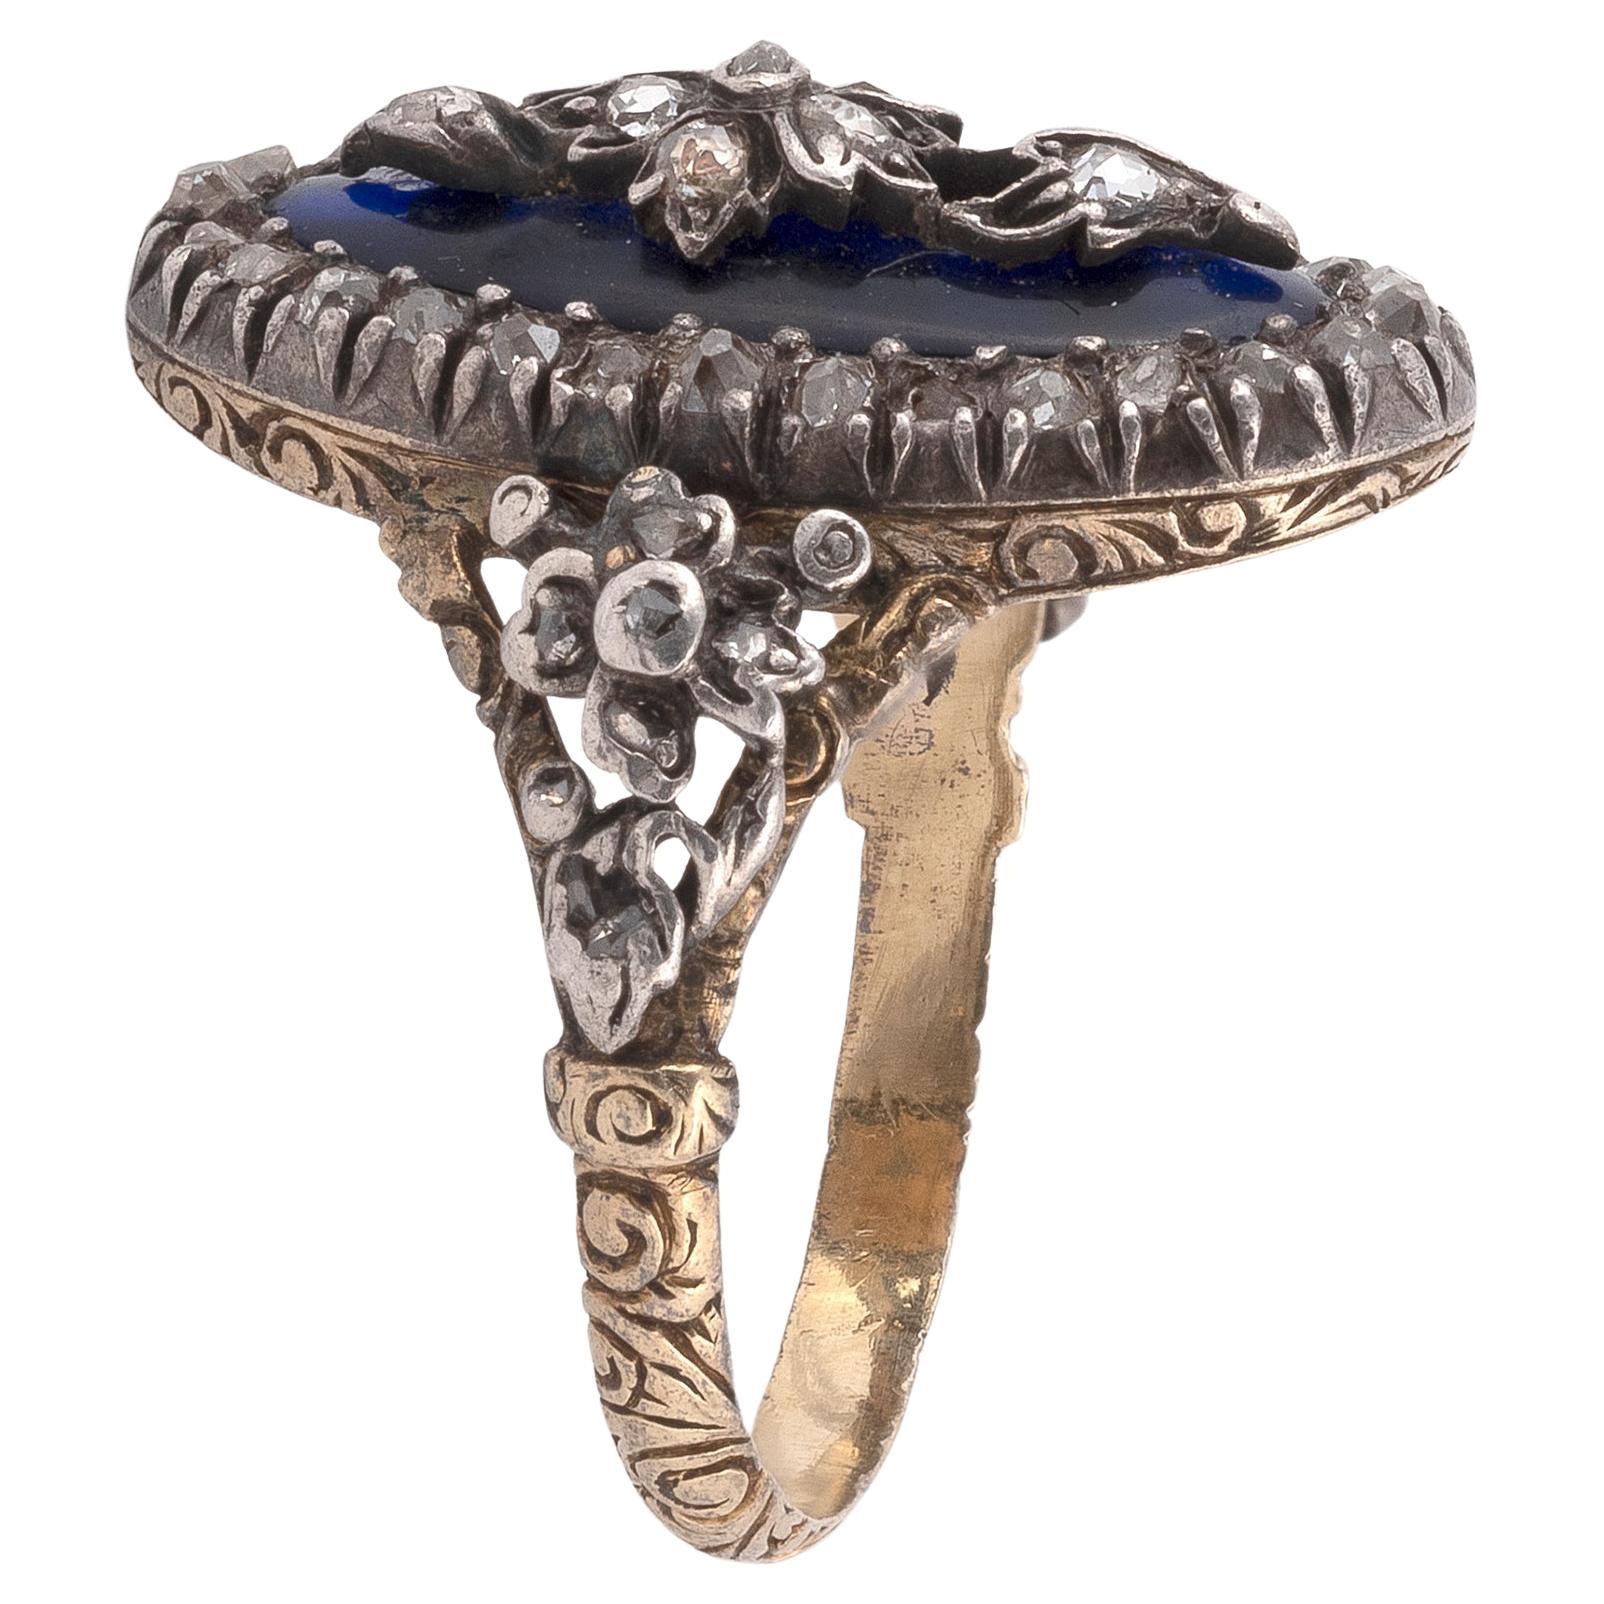 18th century rings